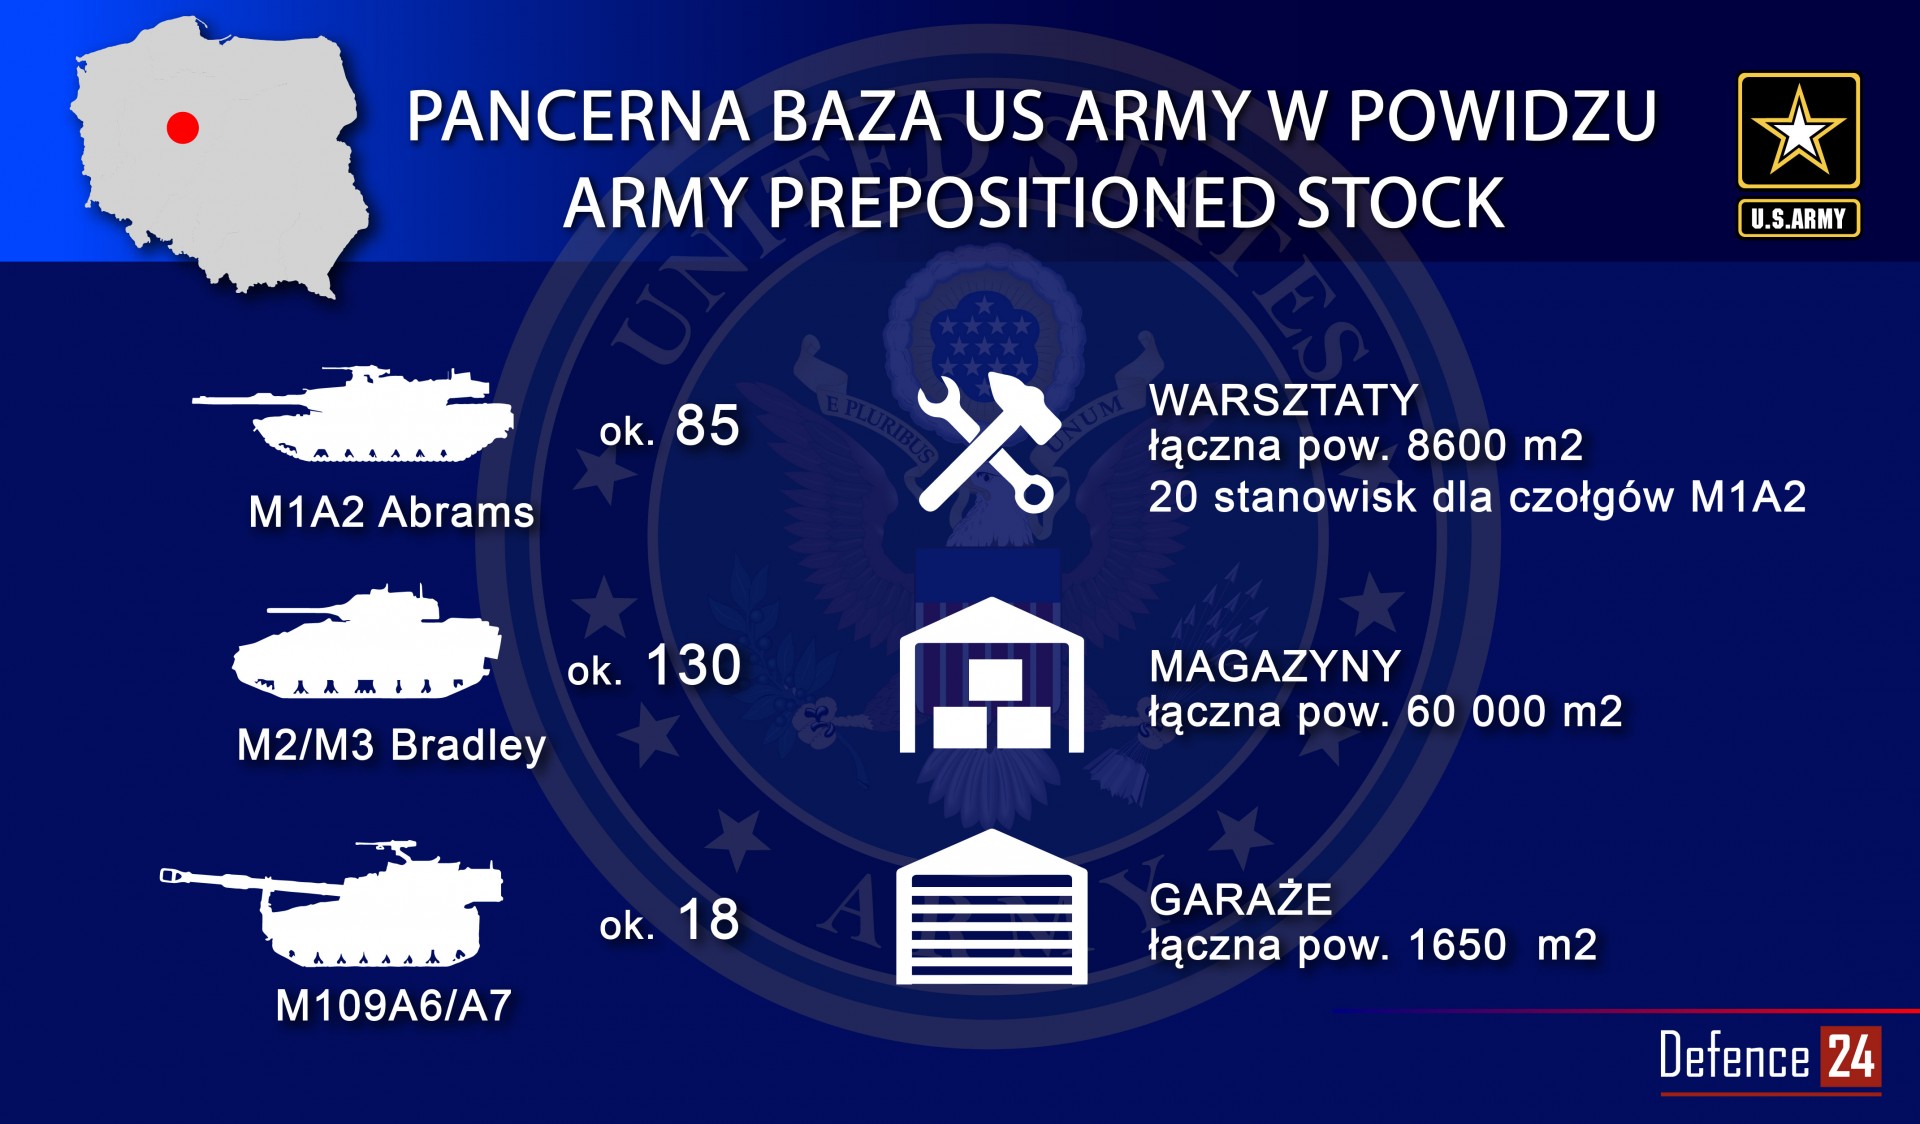 Infografika - Katarzyna Głowacka/Defence24